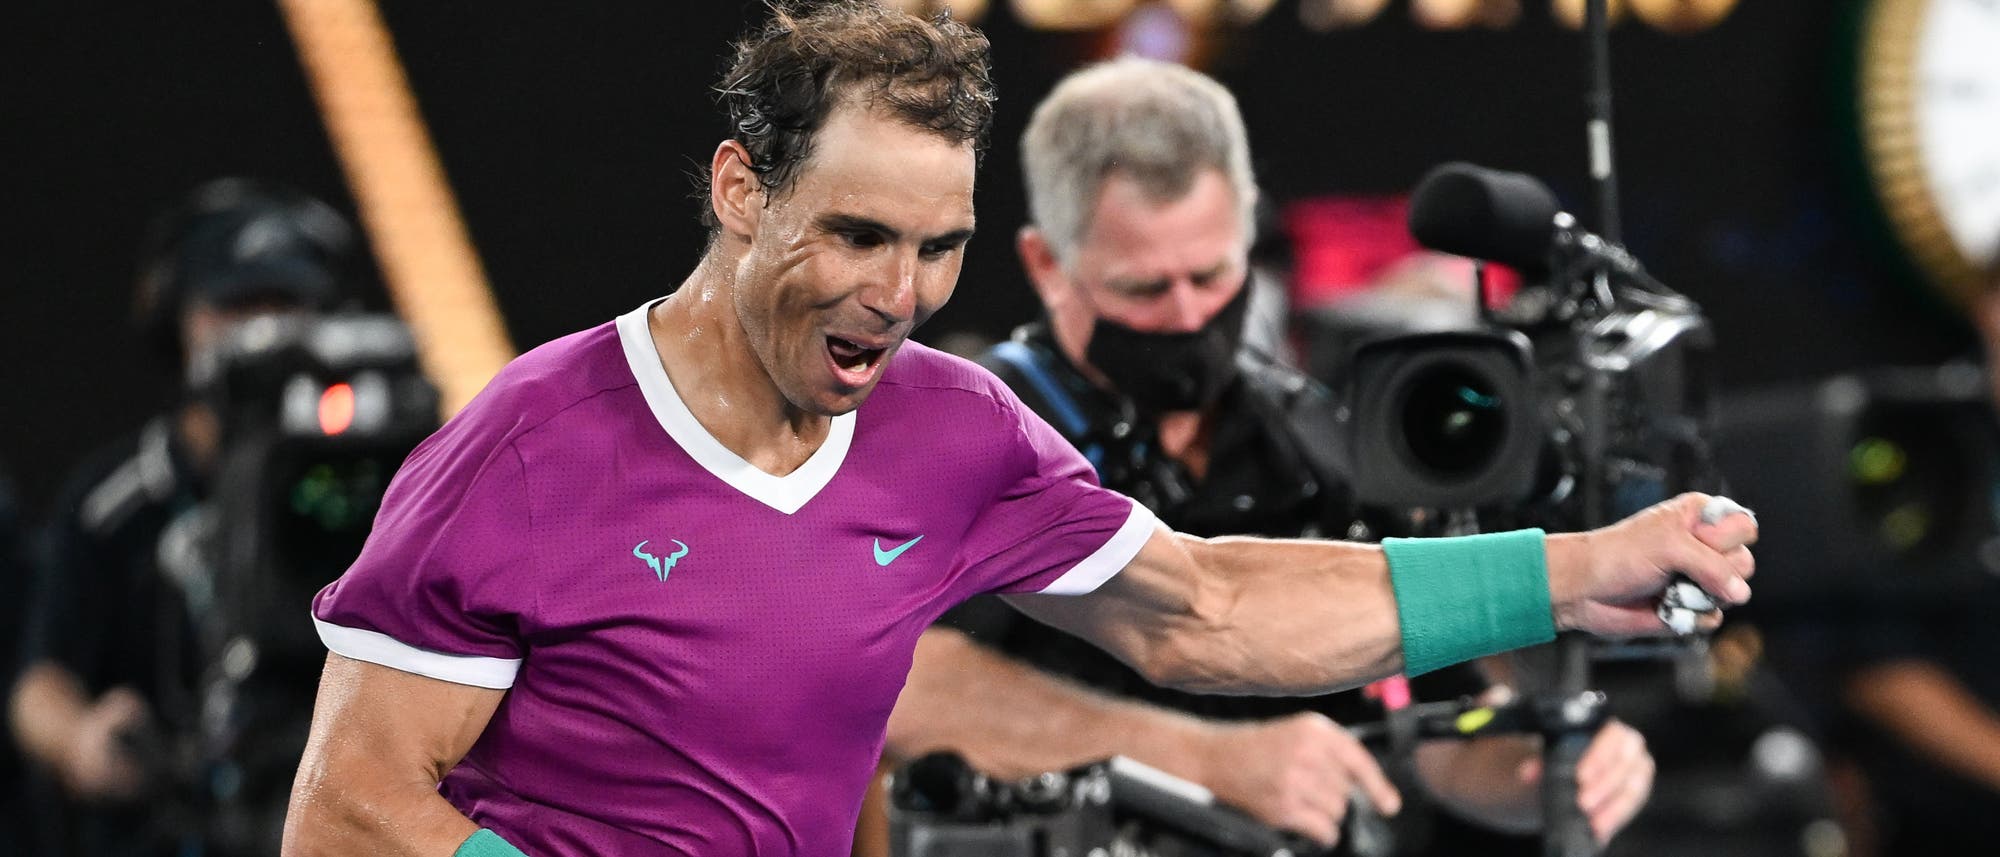 Der Tennisprofi Rafael Nadal jubelt nach seinem Sieg über den an Nummer 2 gesetzten Danil Medvedev im Endspiel der Australian Open 2022 in Melbourne, Australien.